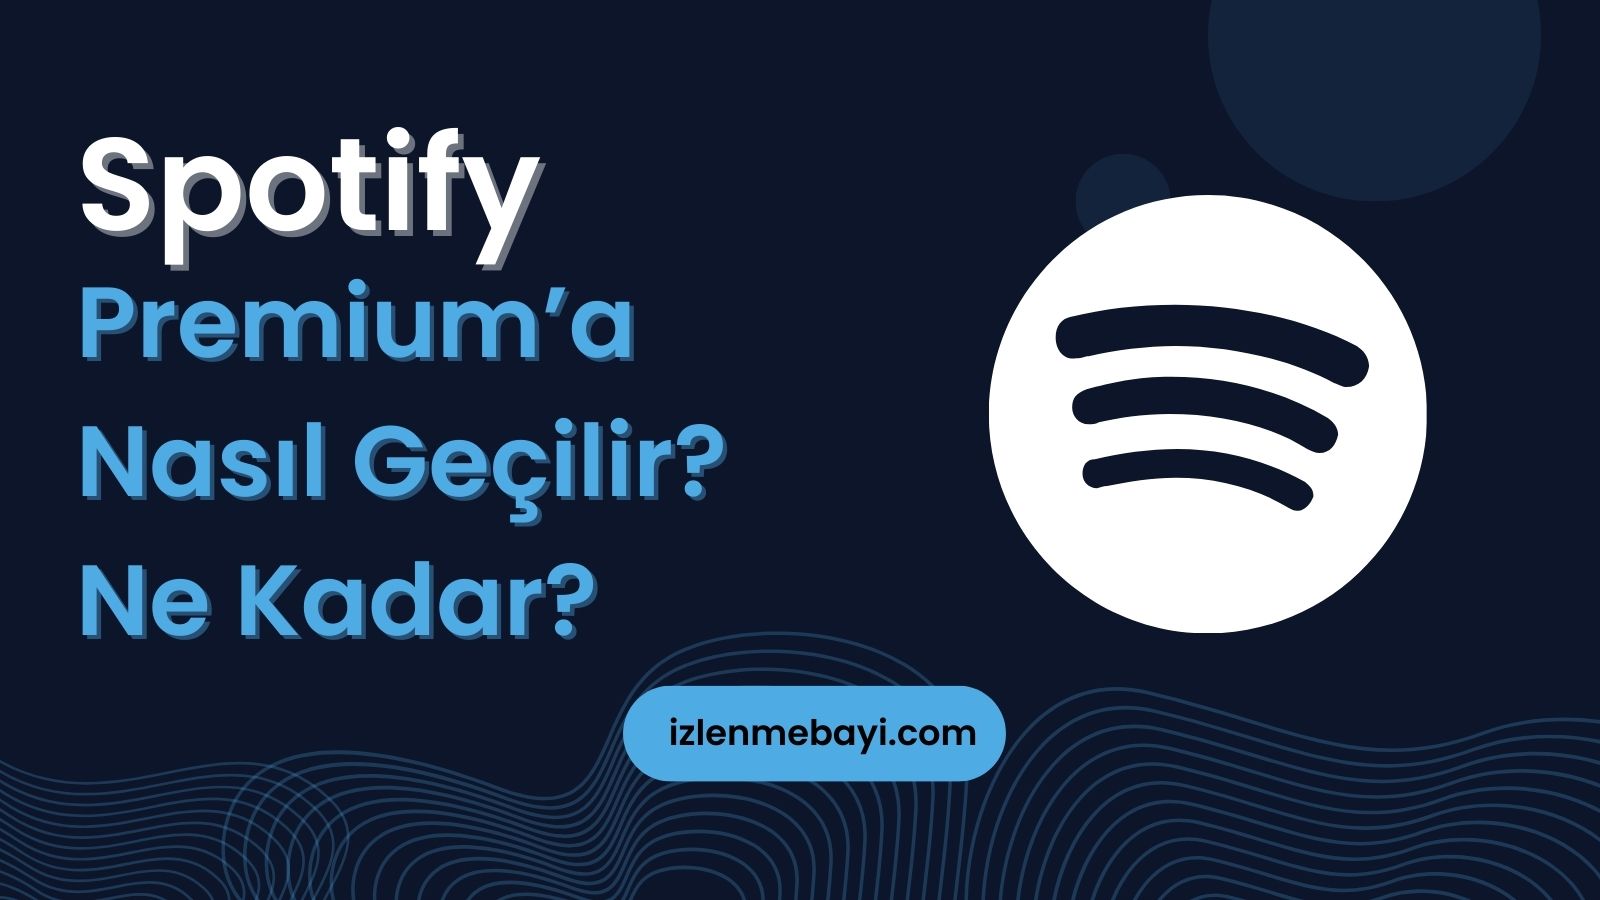 Spotify Premium’a Nasıl Geçilir? Ne Kadar?